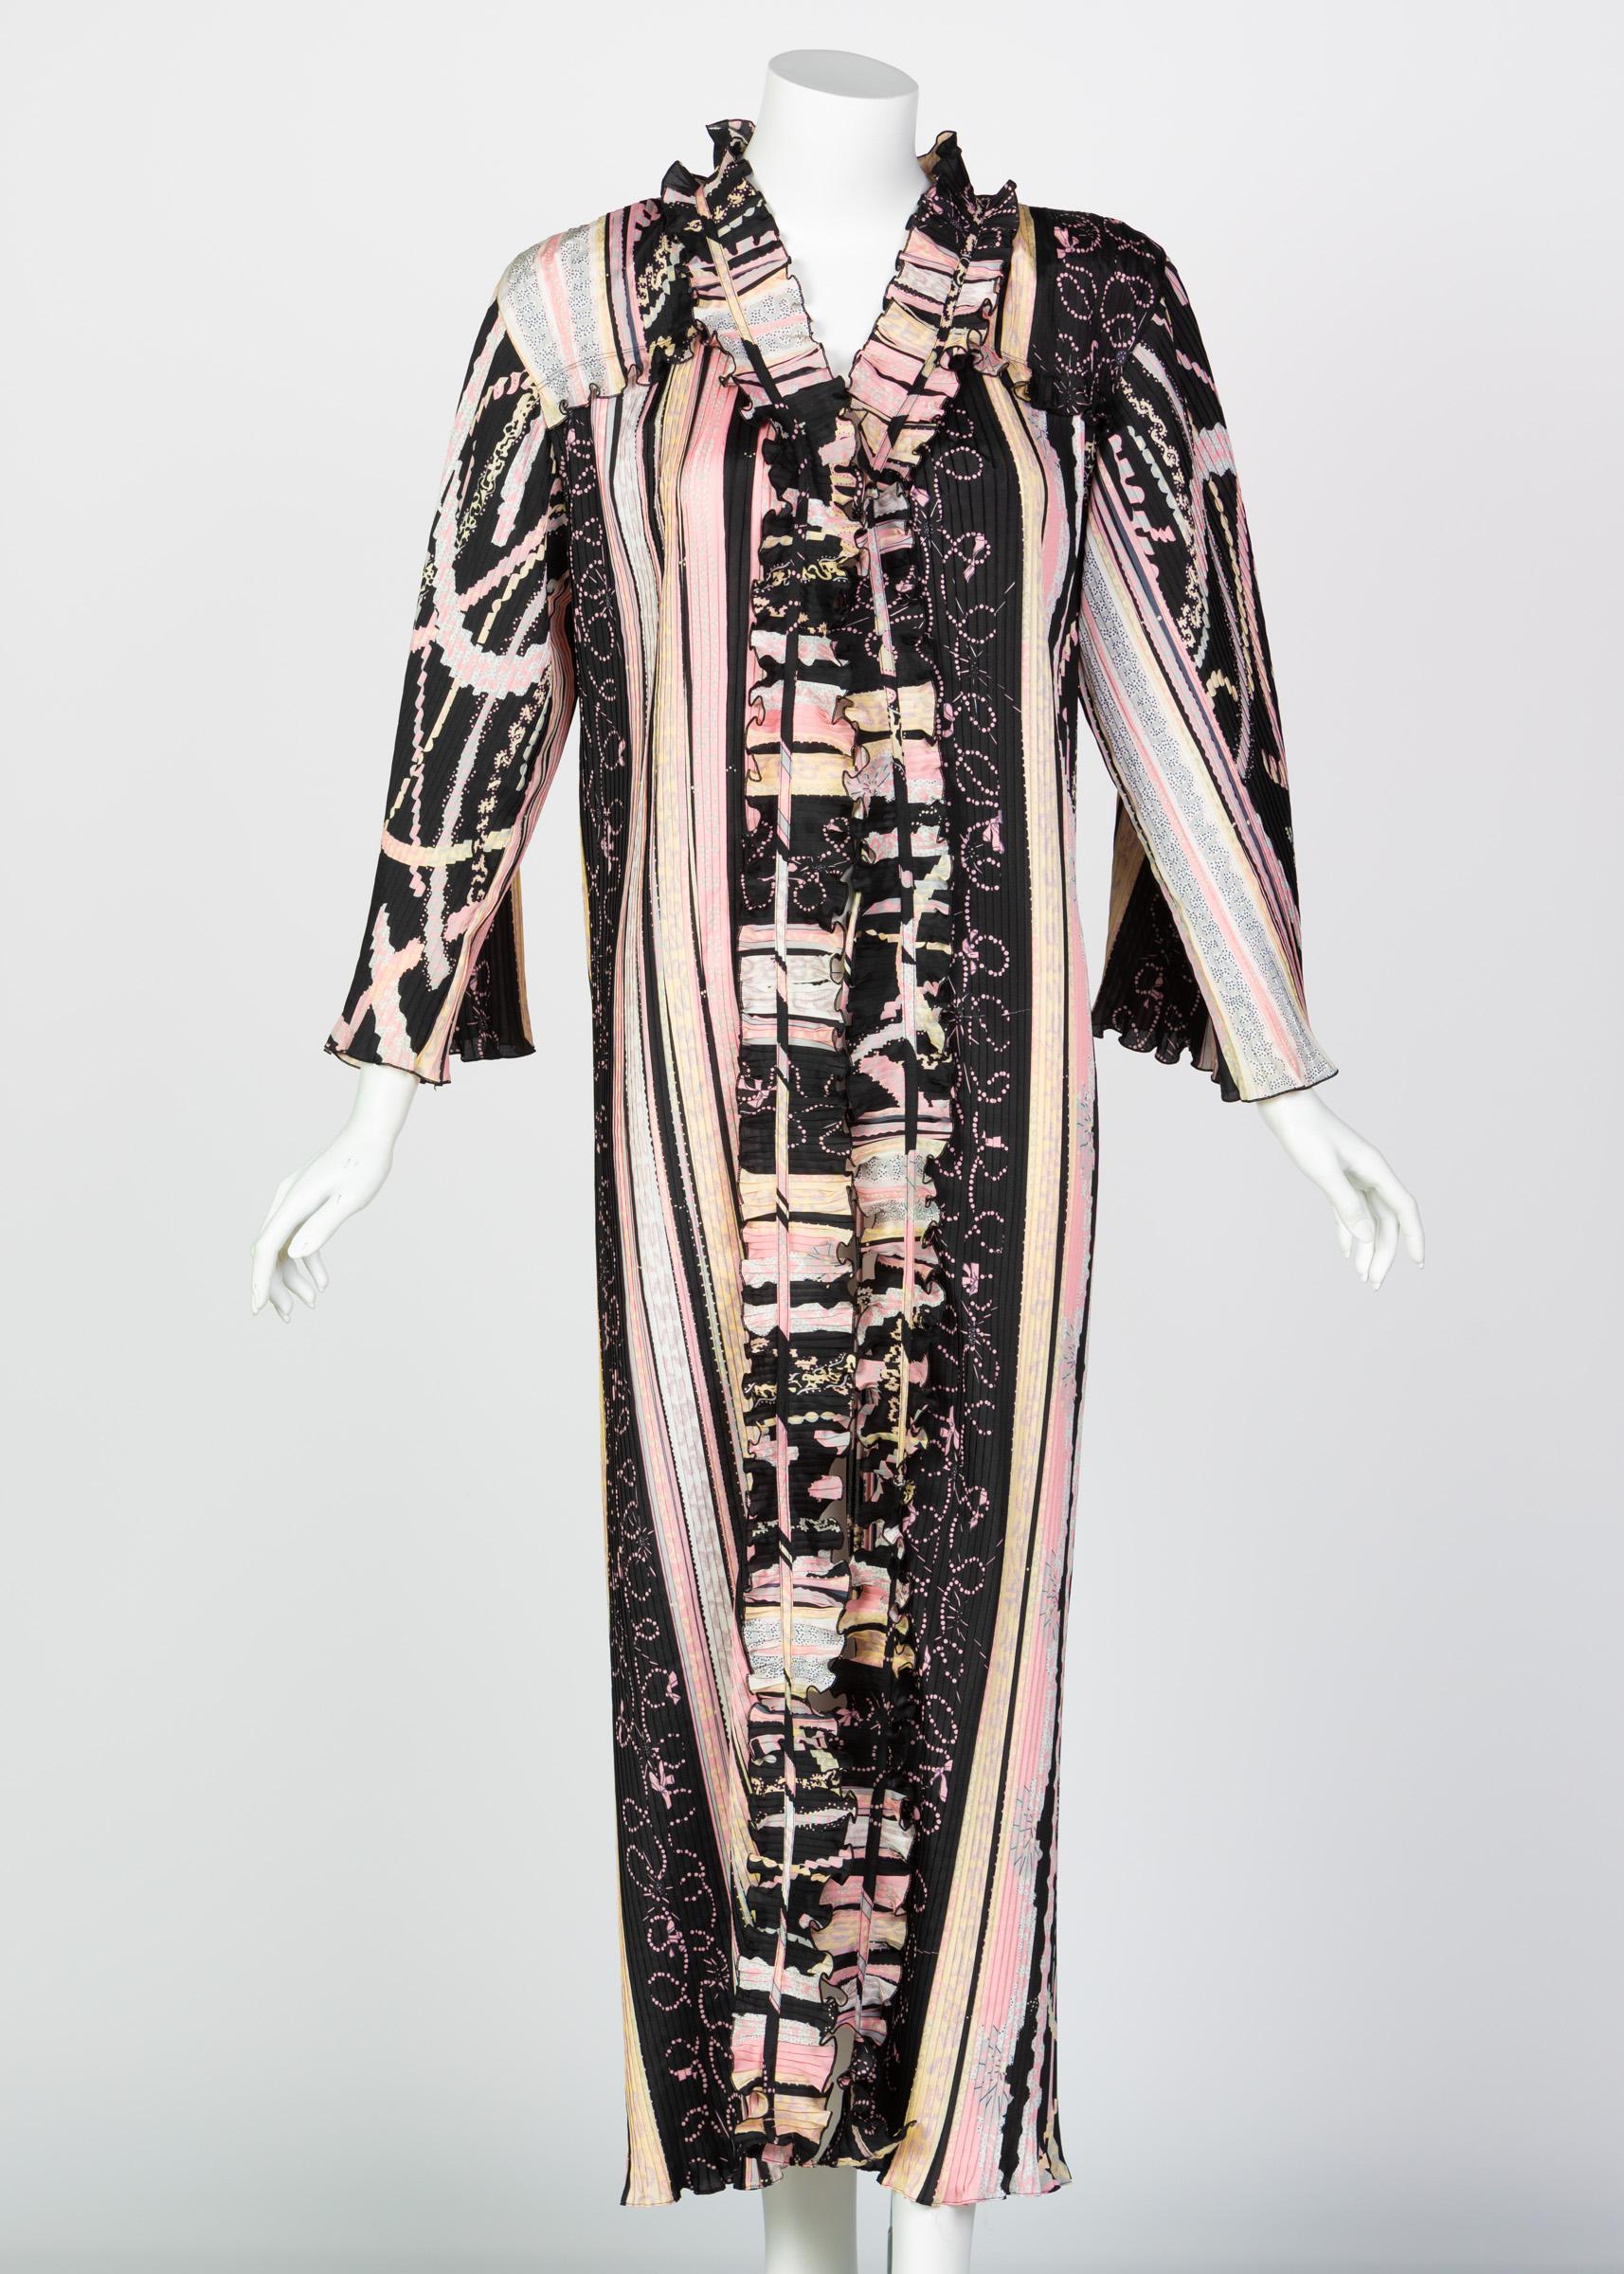 Zandra Rhodes ist eine der ursprünglichen Königinnen der Exzentrik. Ihre kühnen Silhouetten und noch kühneren Farben markierten in den 70er bis 80er Jahren eine Moderevolution, die heute wieder aufgegriffen wird. Mit mehreren Museumsausstellungen,